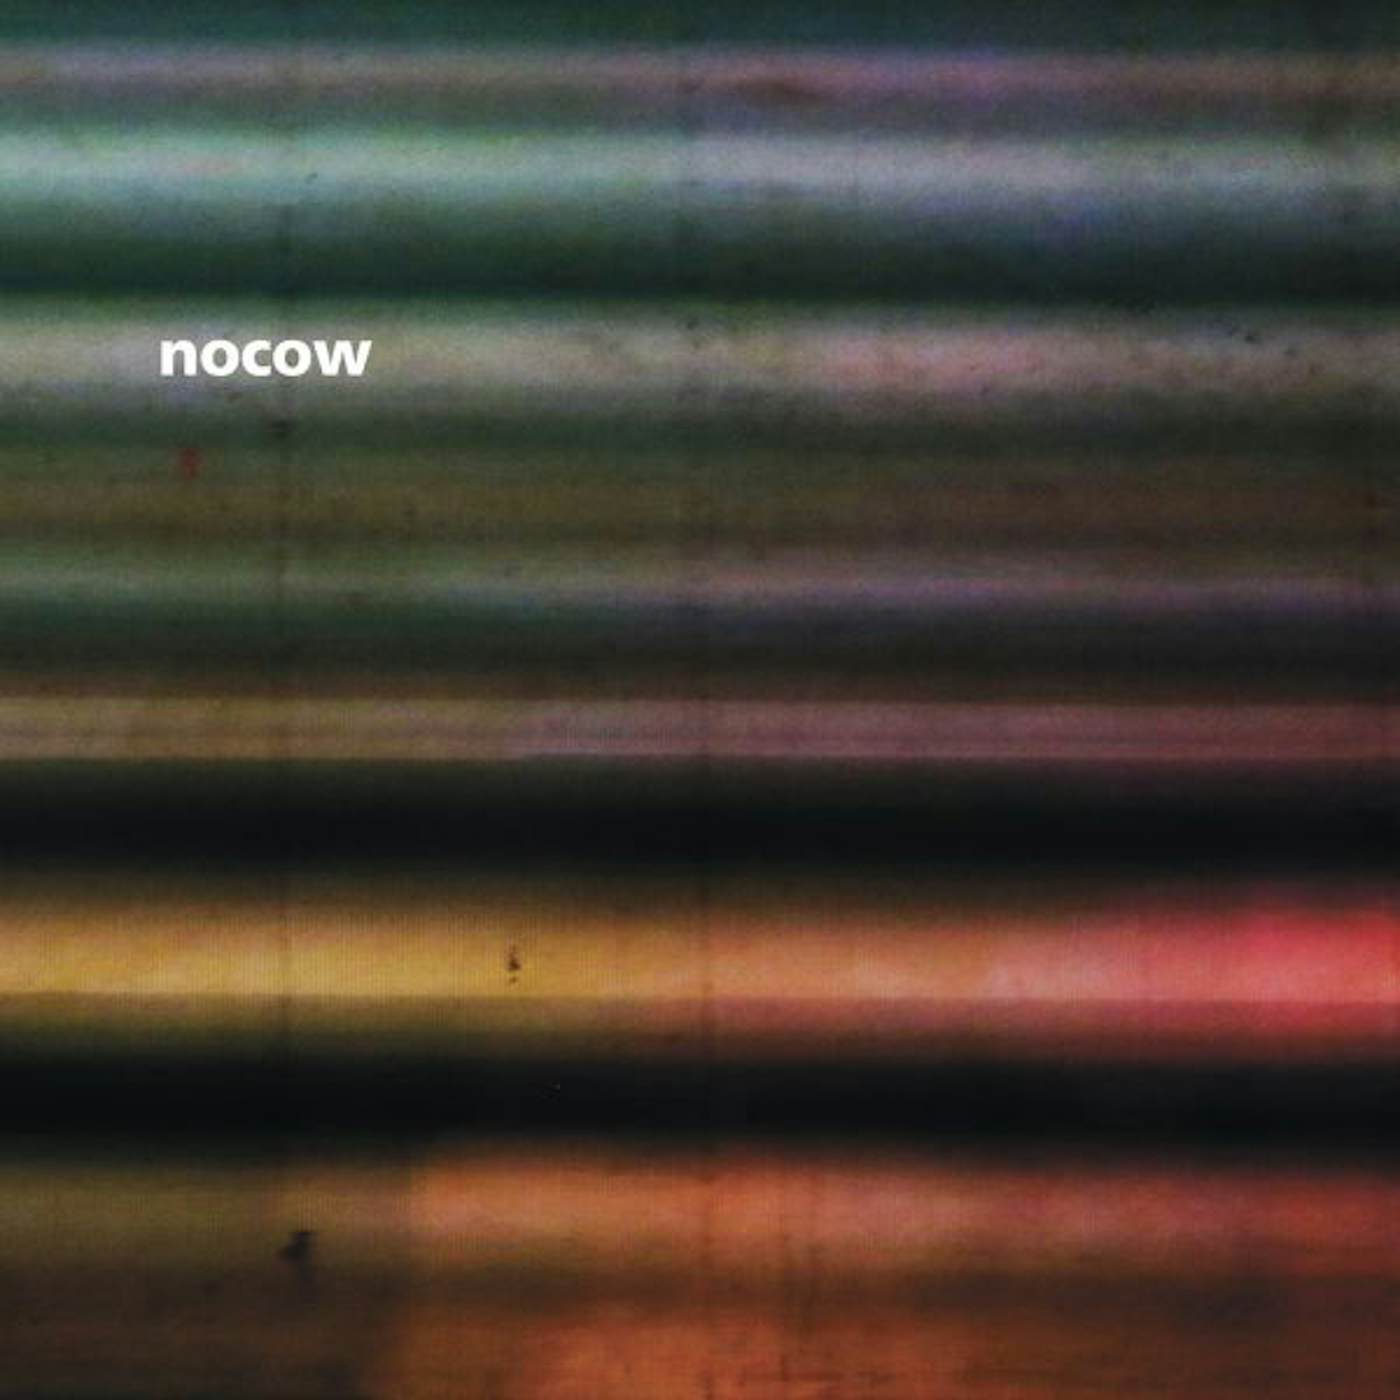 Nocow Voda Vinyl Record